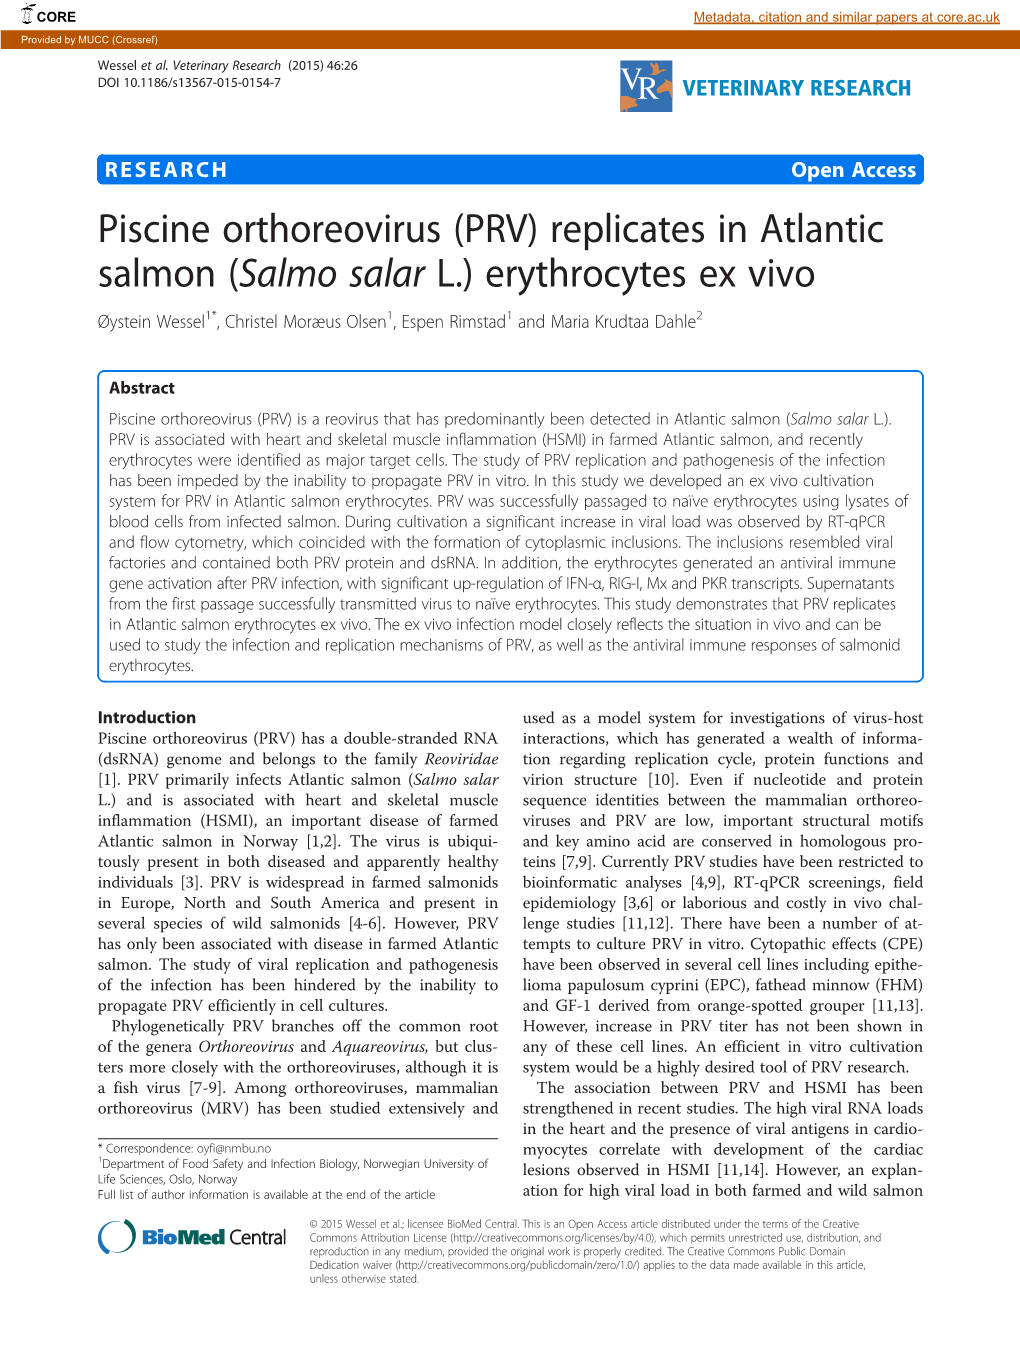 Piscine Orthoreovirus (PRV) Replicates in Atlantic Salmon